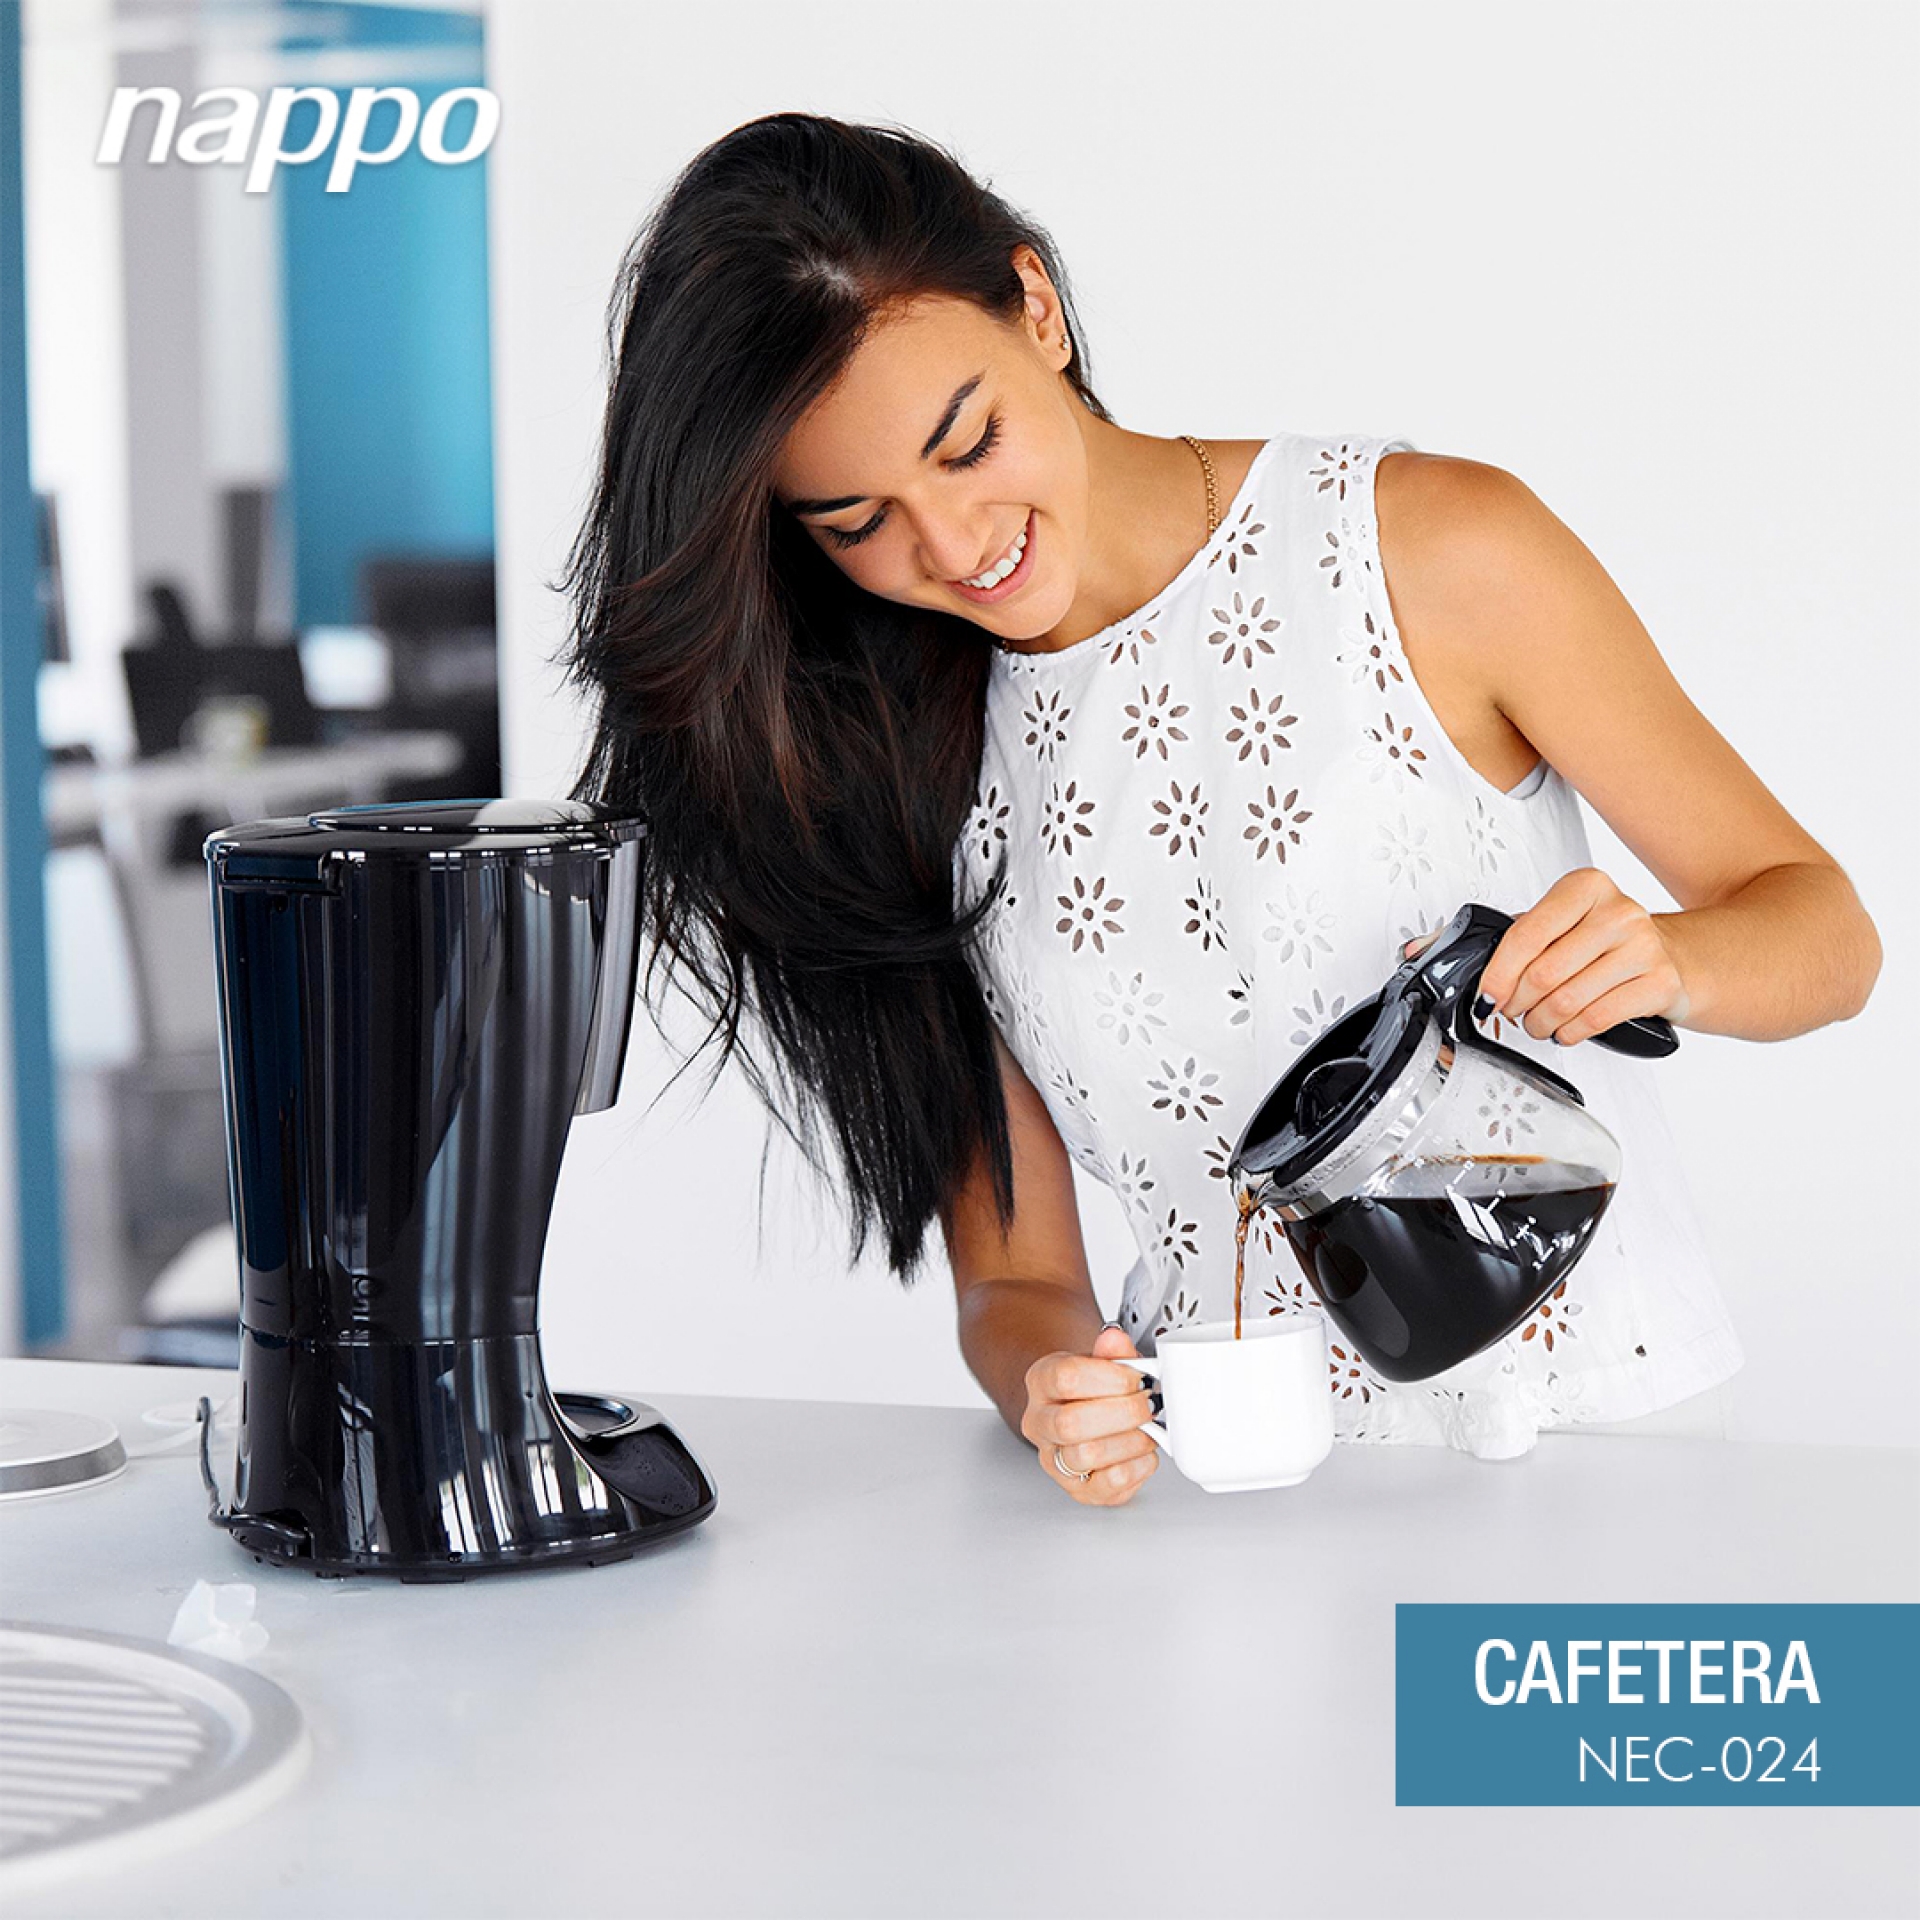 Cafetera Multicapsula Nappo NEC-139 3 en 1 0.6 Litros